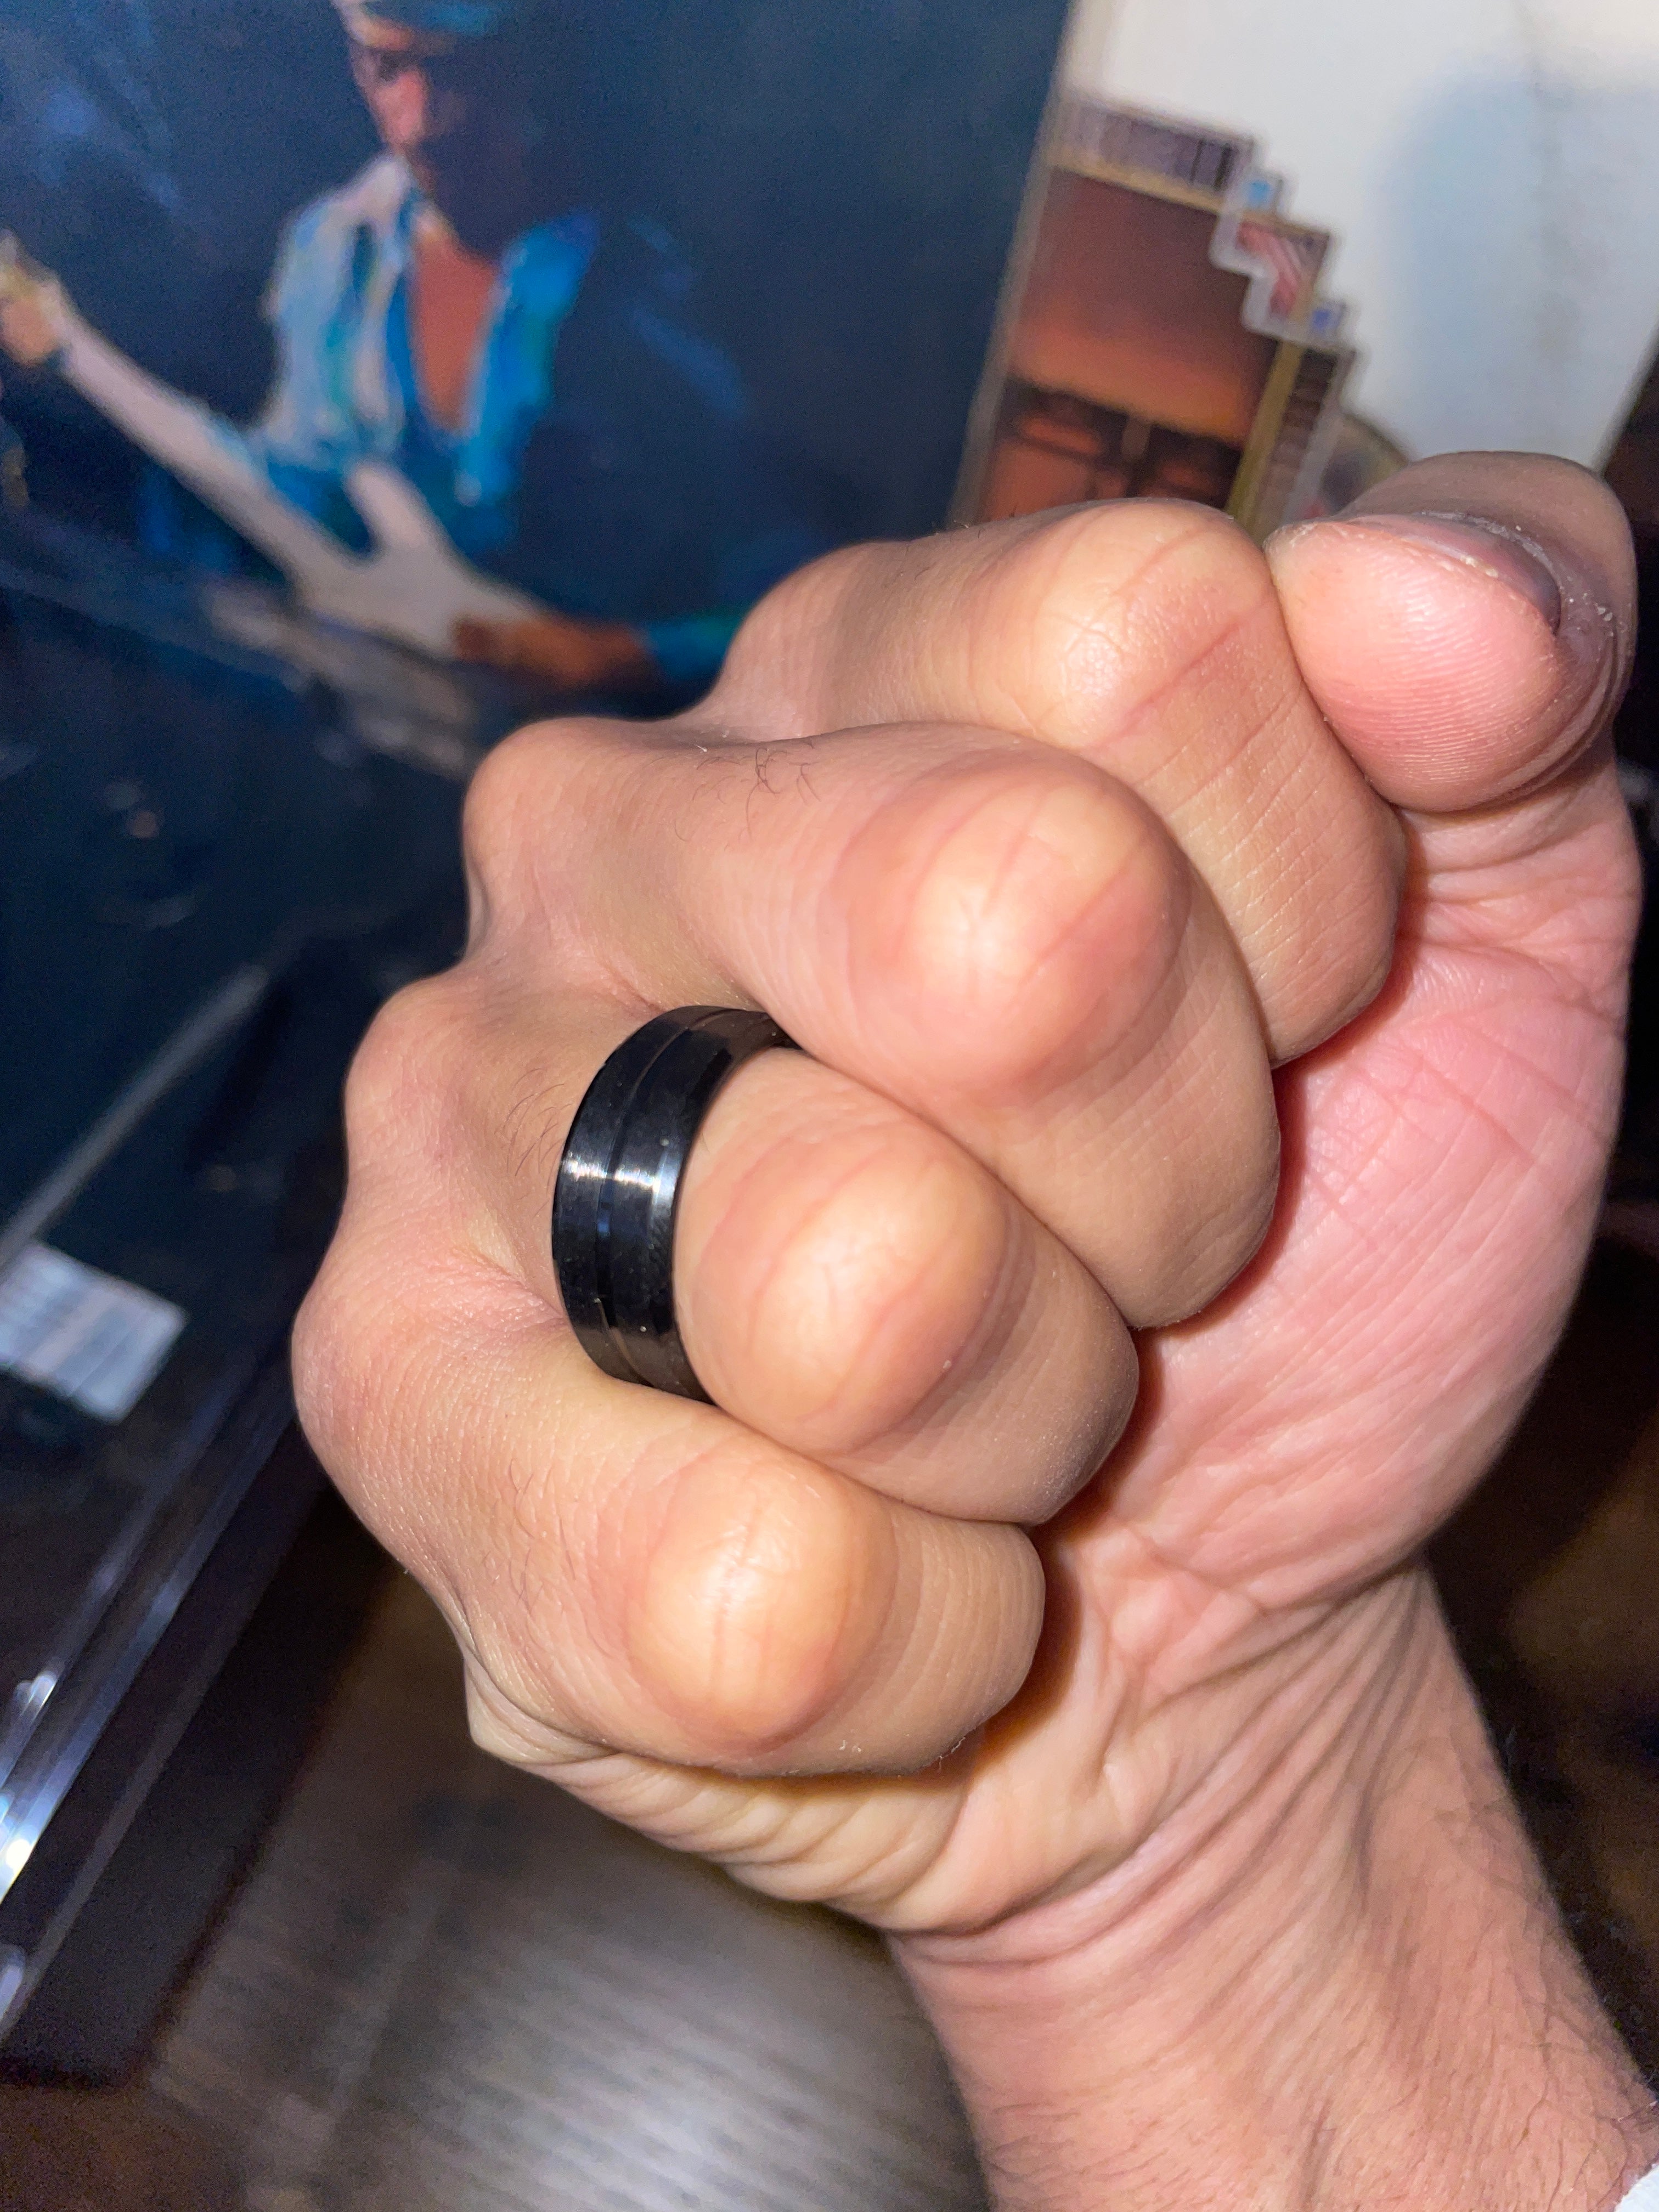 Everest Ring 8mm Tungsten Carbide